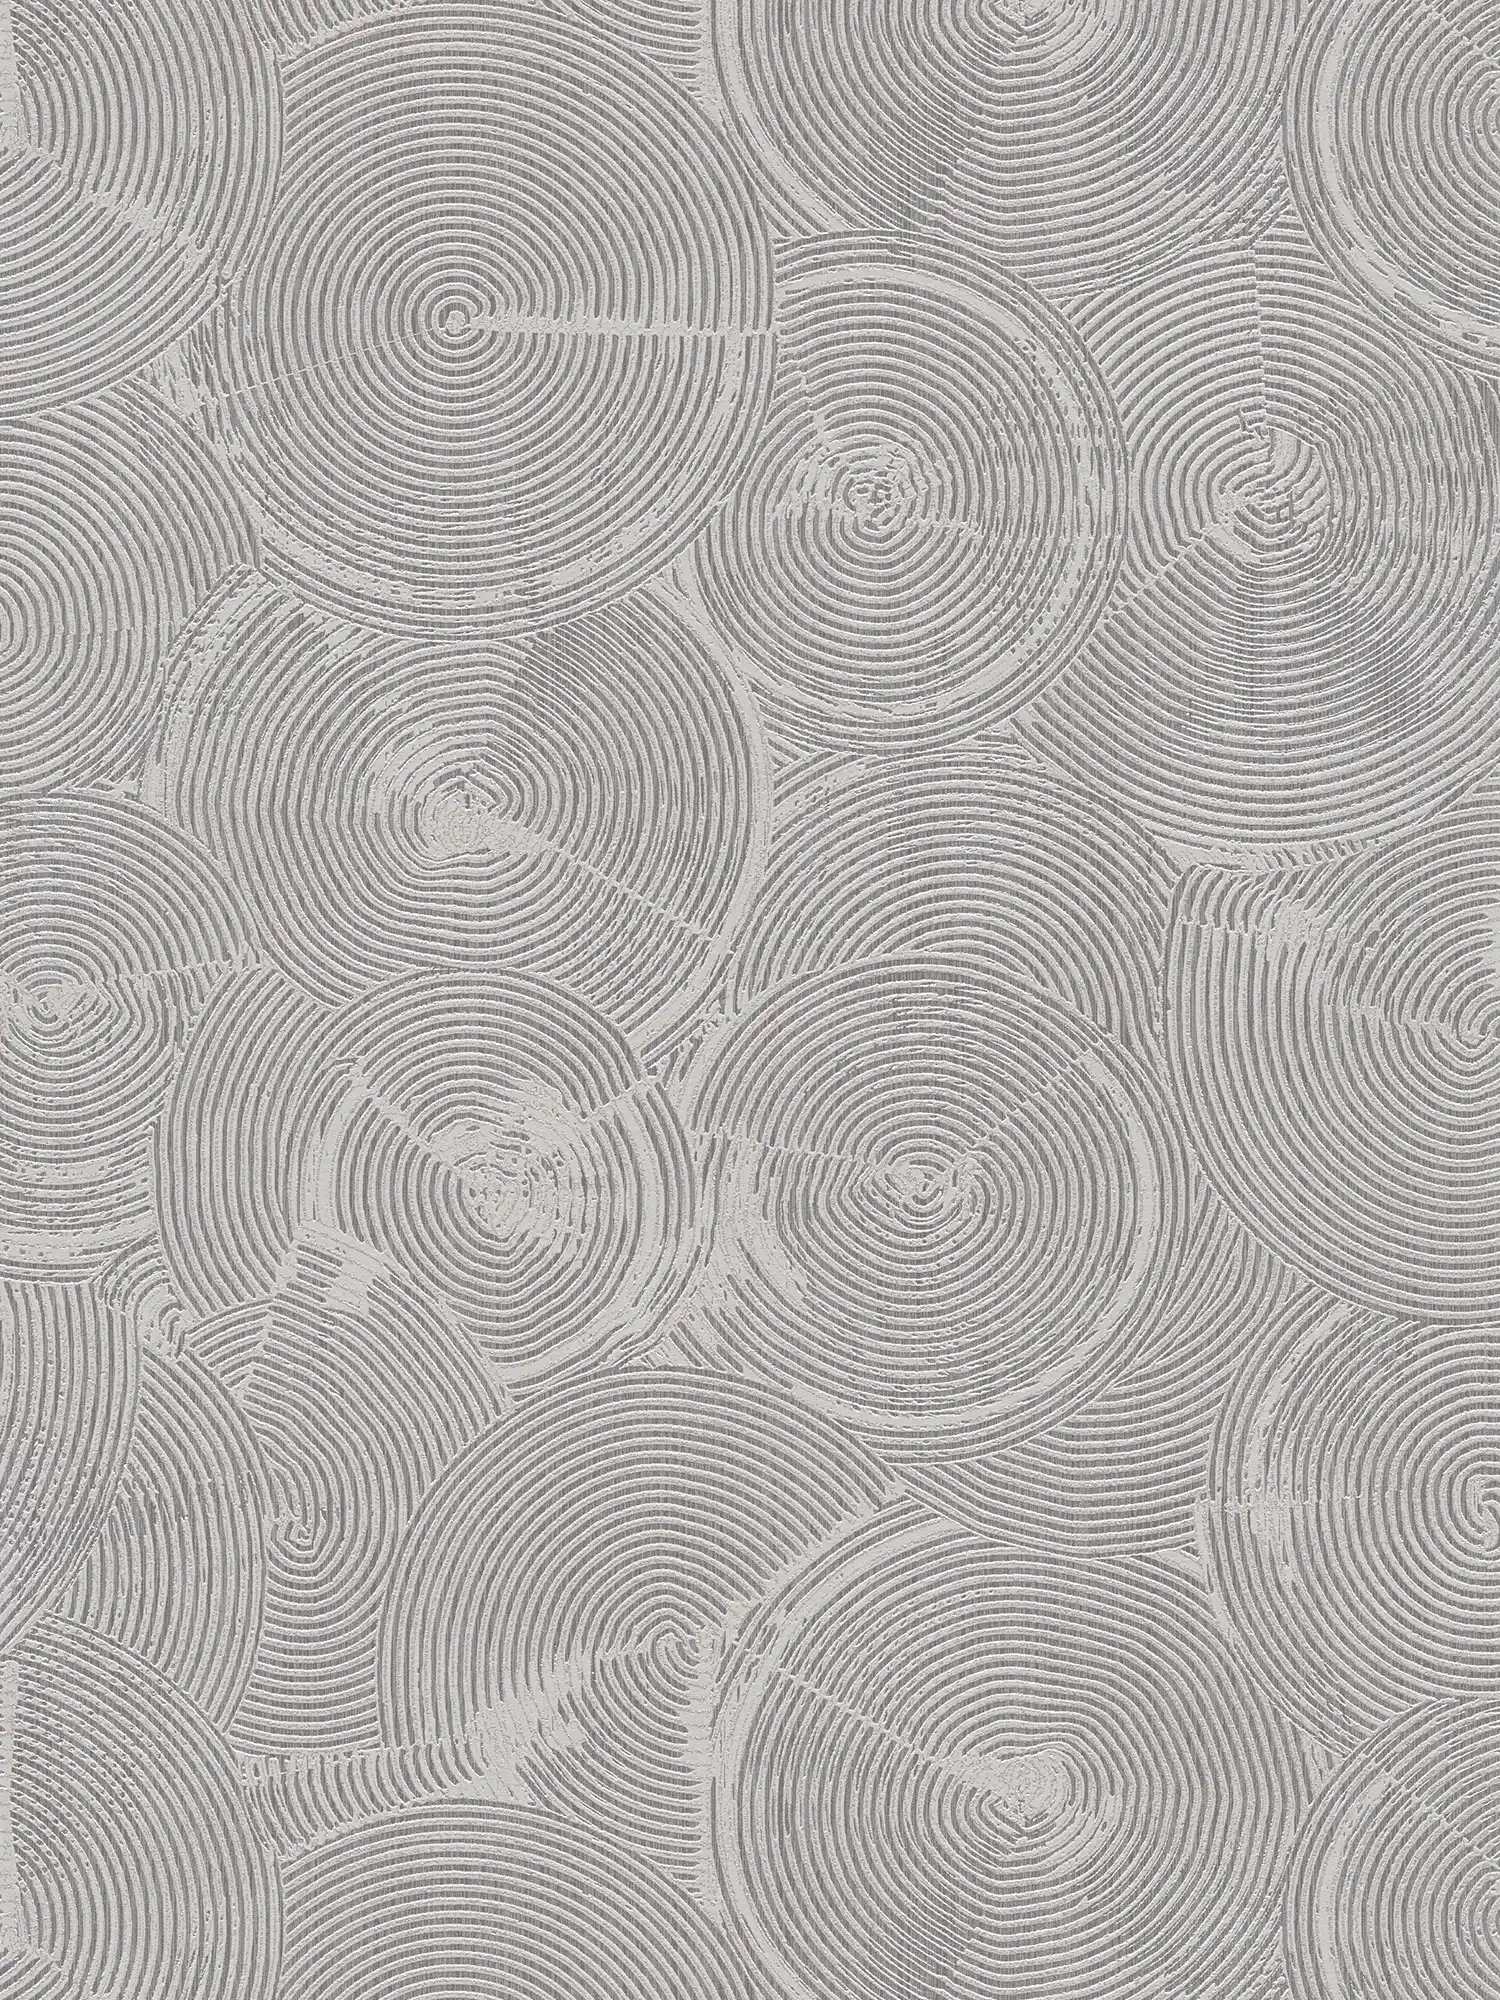 Papel pintado óptico de yeso con efecto metálico plateado - gris, metálico, blanco
